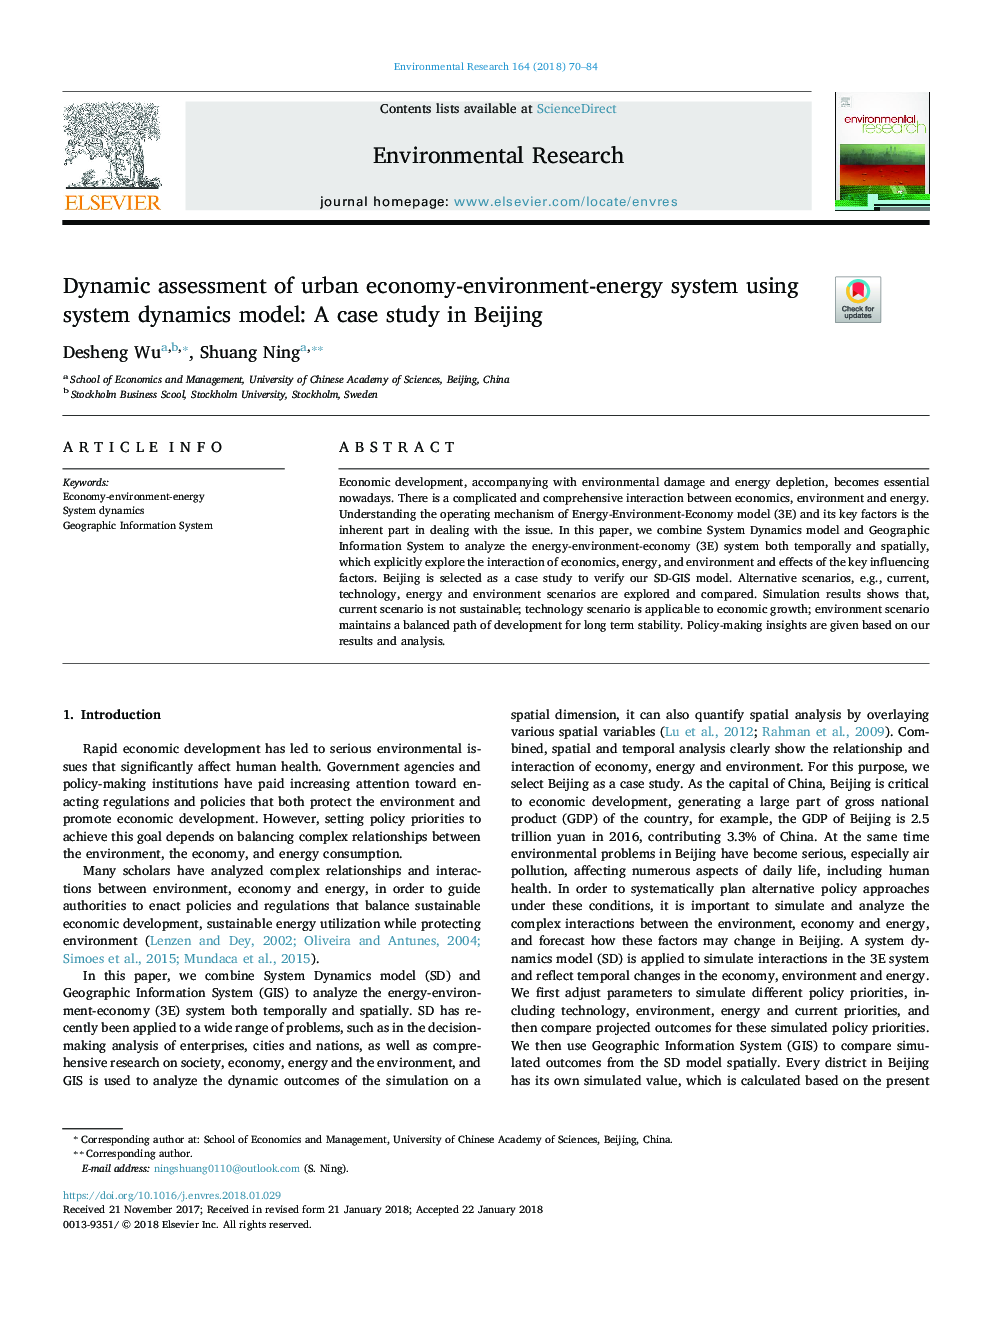 ارزیابی دینامیکی اقتصاد شهری، محیط زیست و انرژی با استفاده از مدل پویایی سیستم: مطالعه موردی در پکن 